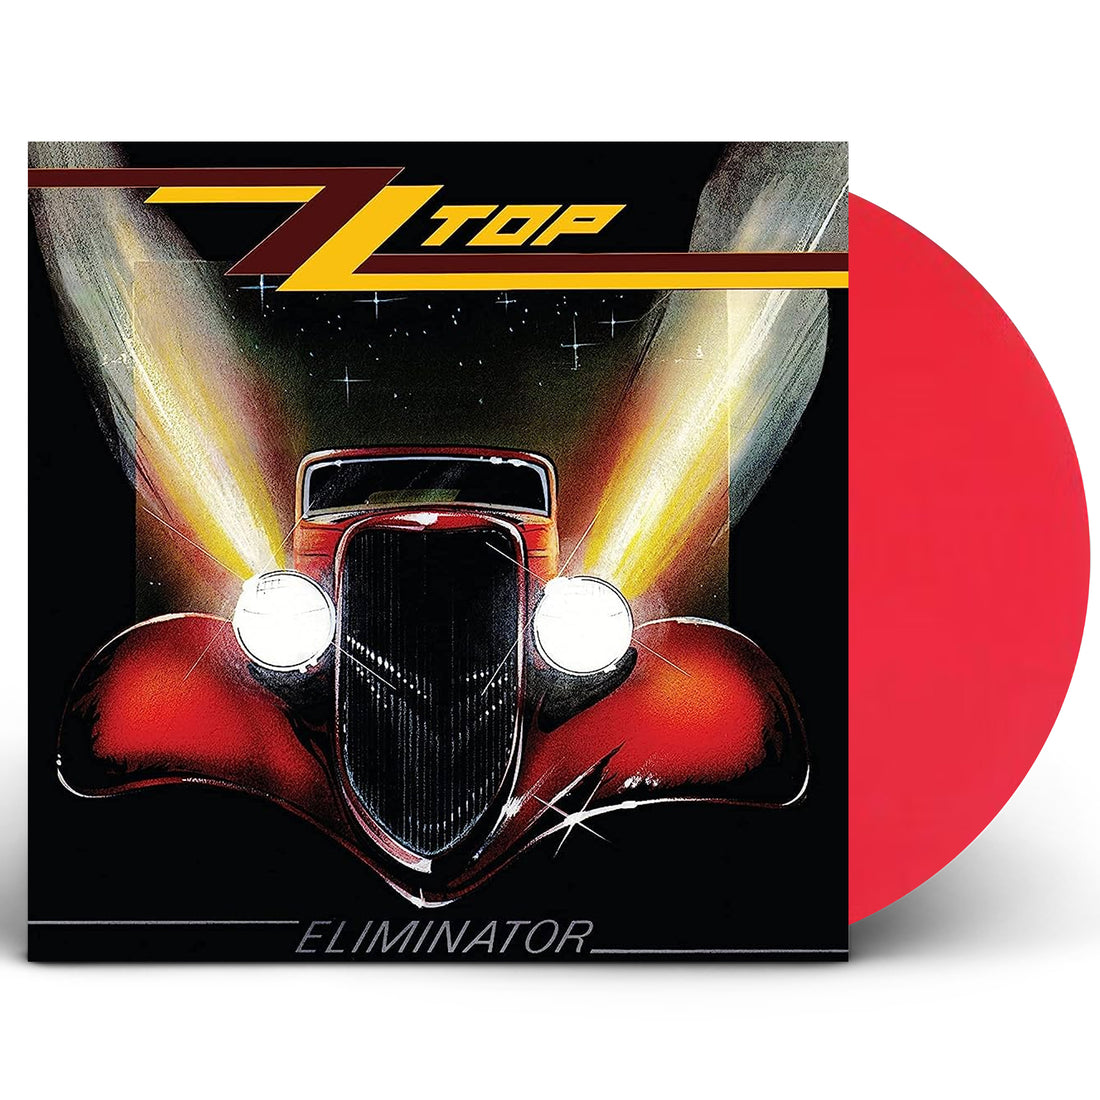 ZZ Top "Eliminator" LP Opaque Red Vinyl